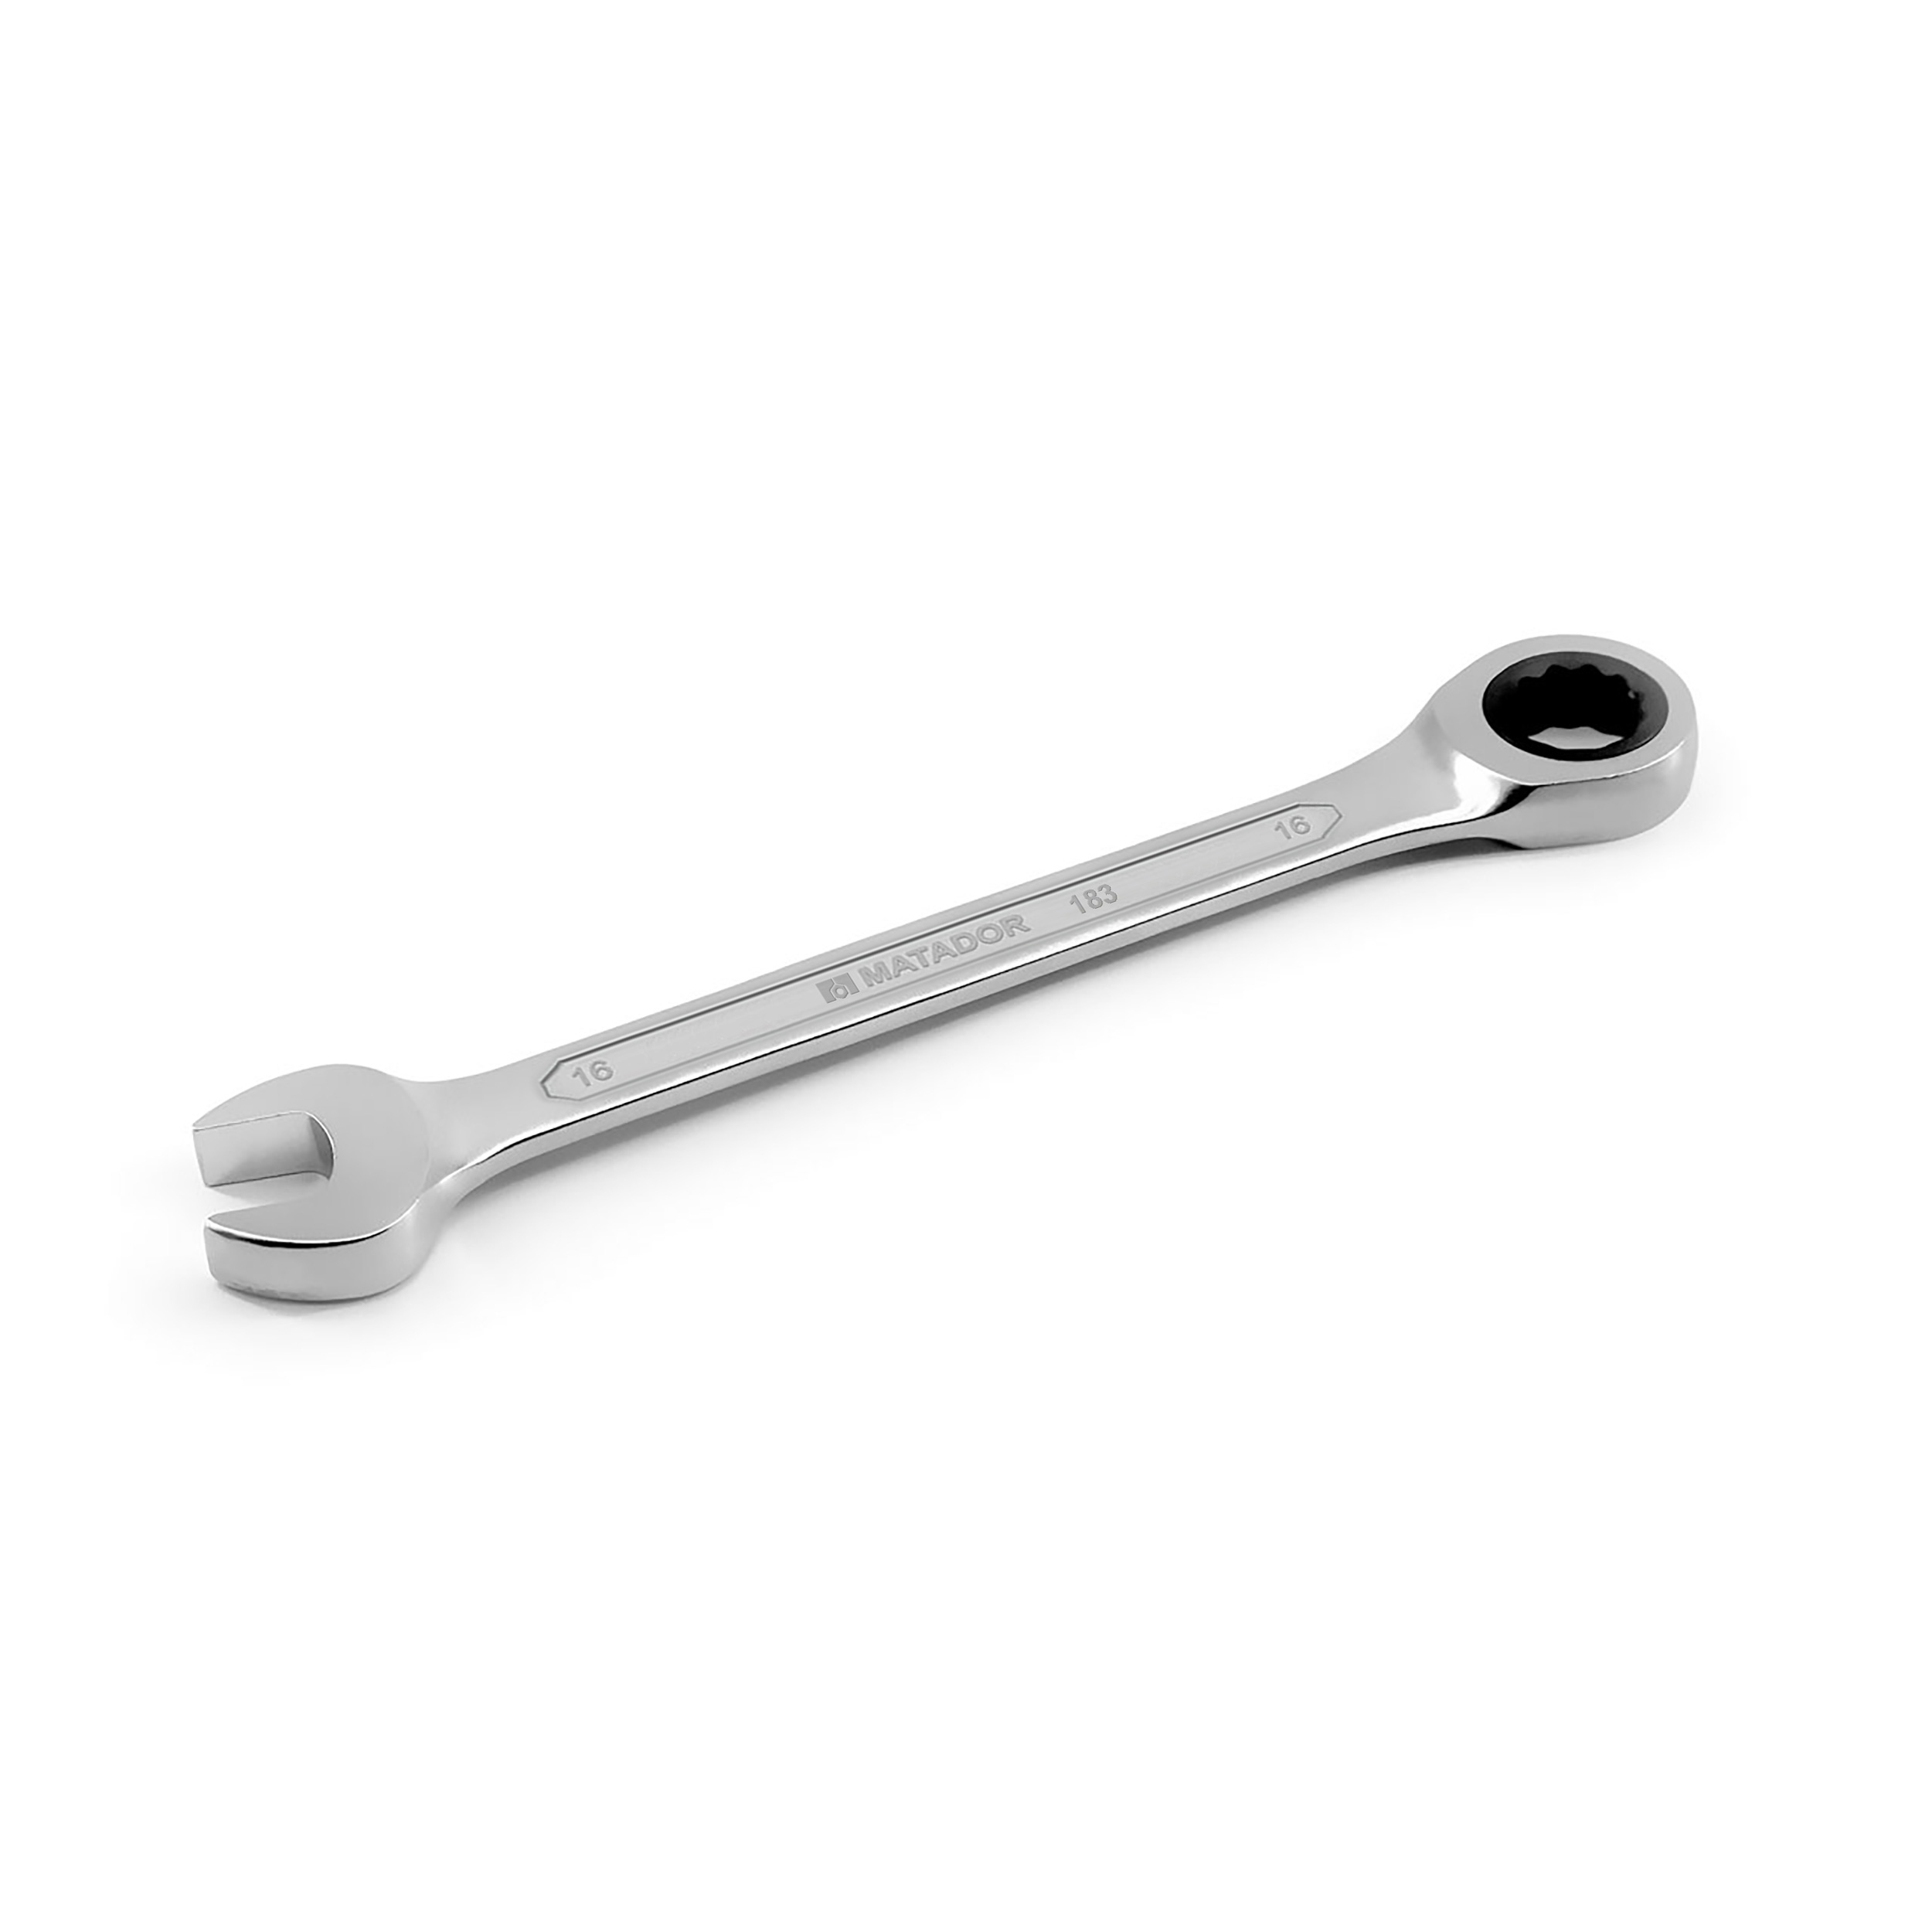 Knarren-Ringmaulschlüssel, 16 mm, 296 Nm, MATADOR Art.-Code: 01830160